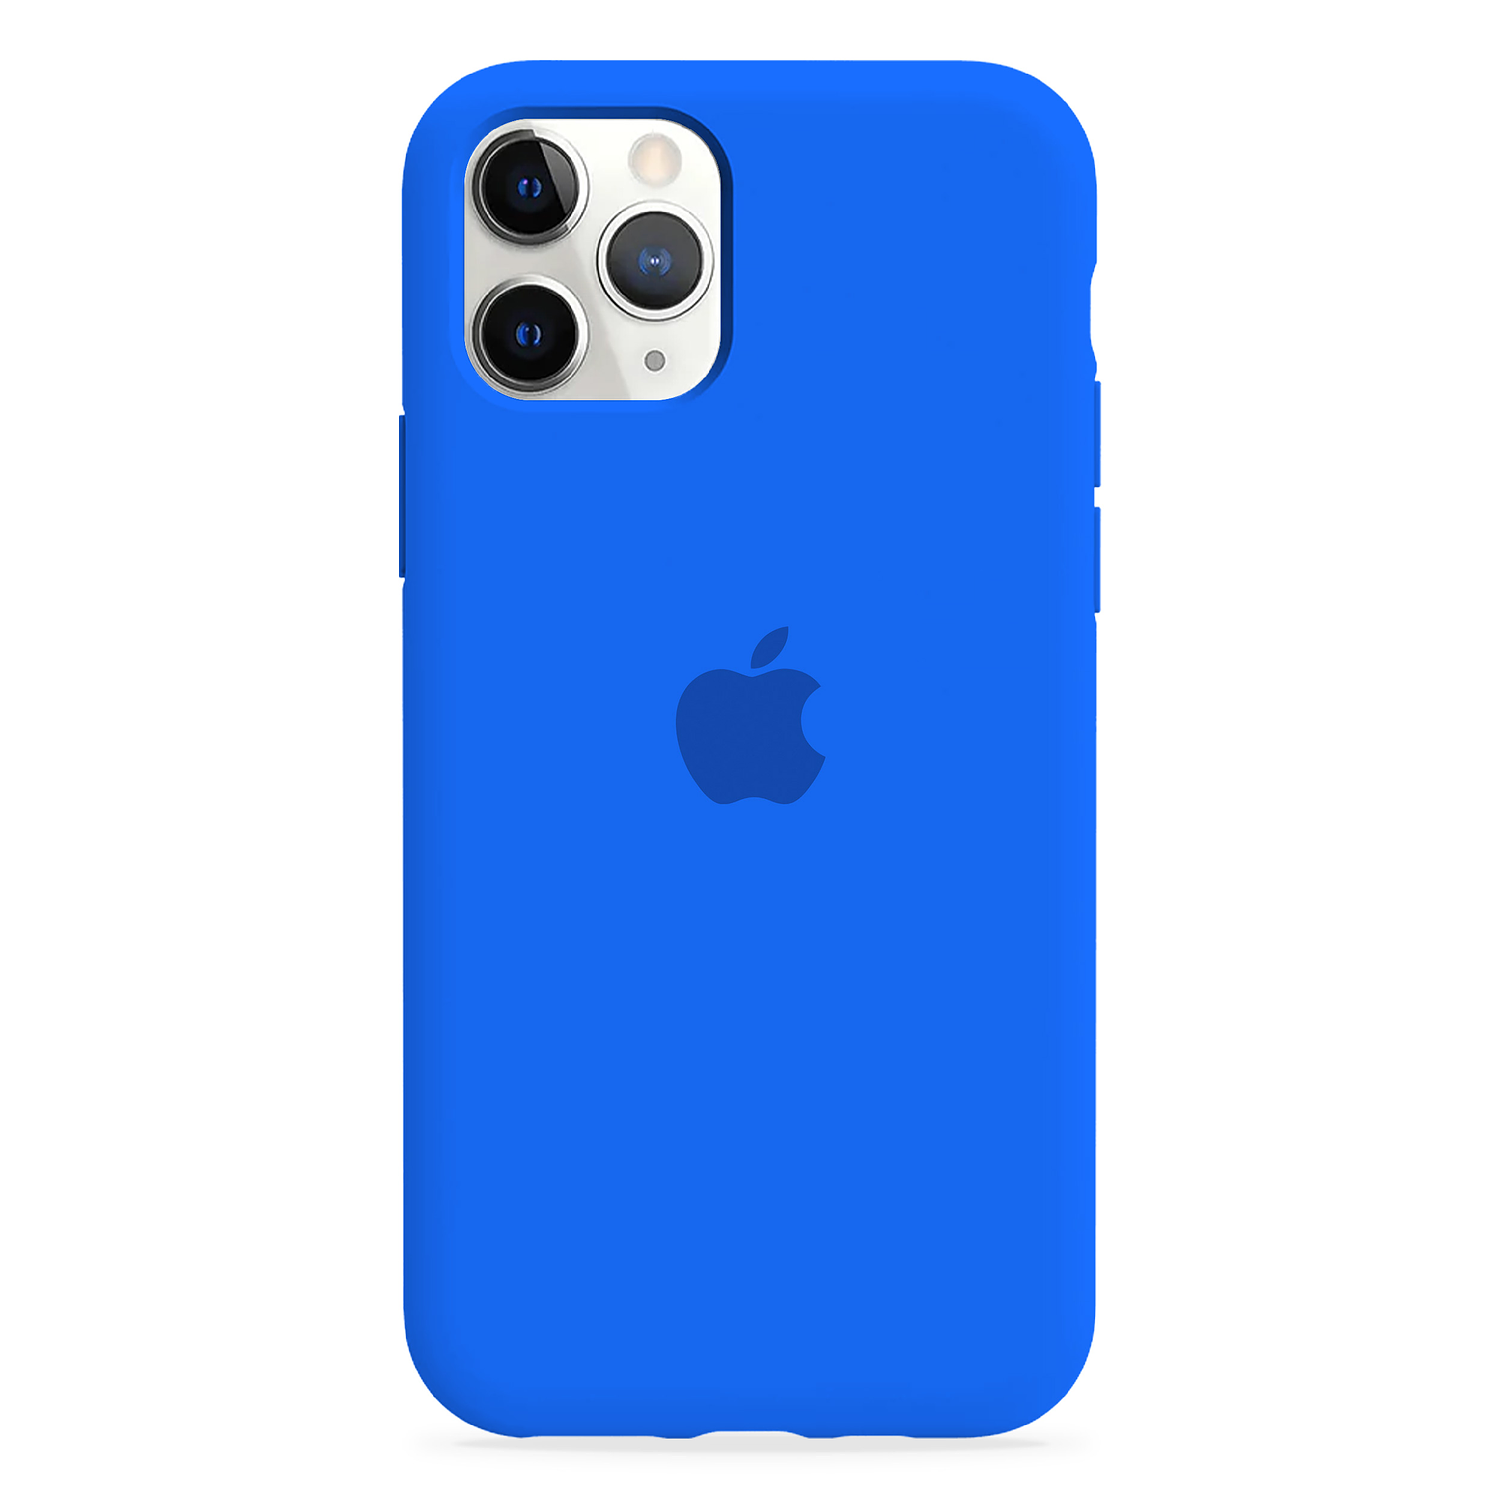 Carcasa de Silicona - iPhone 11 Pro 9